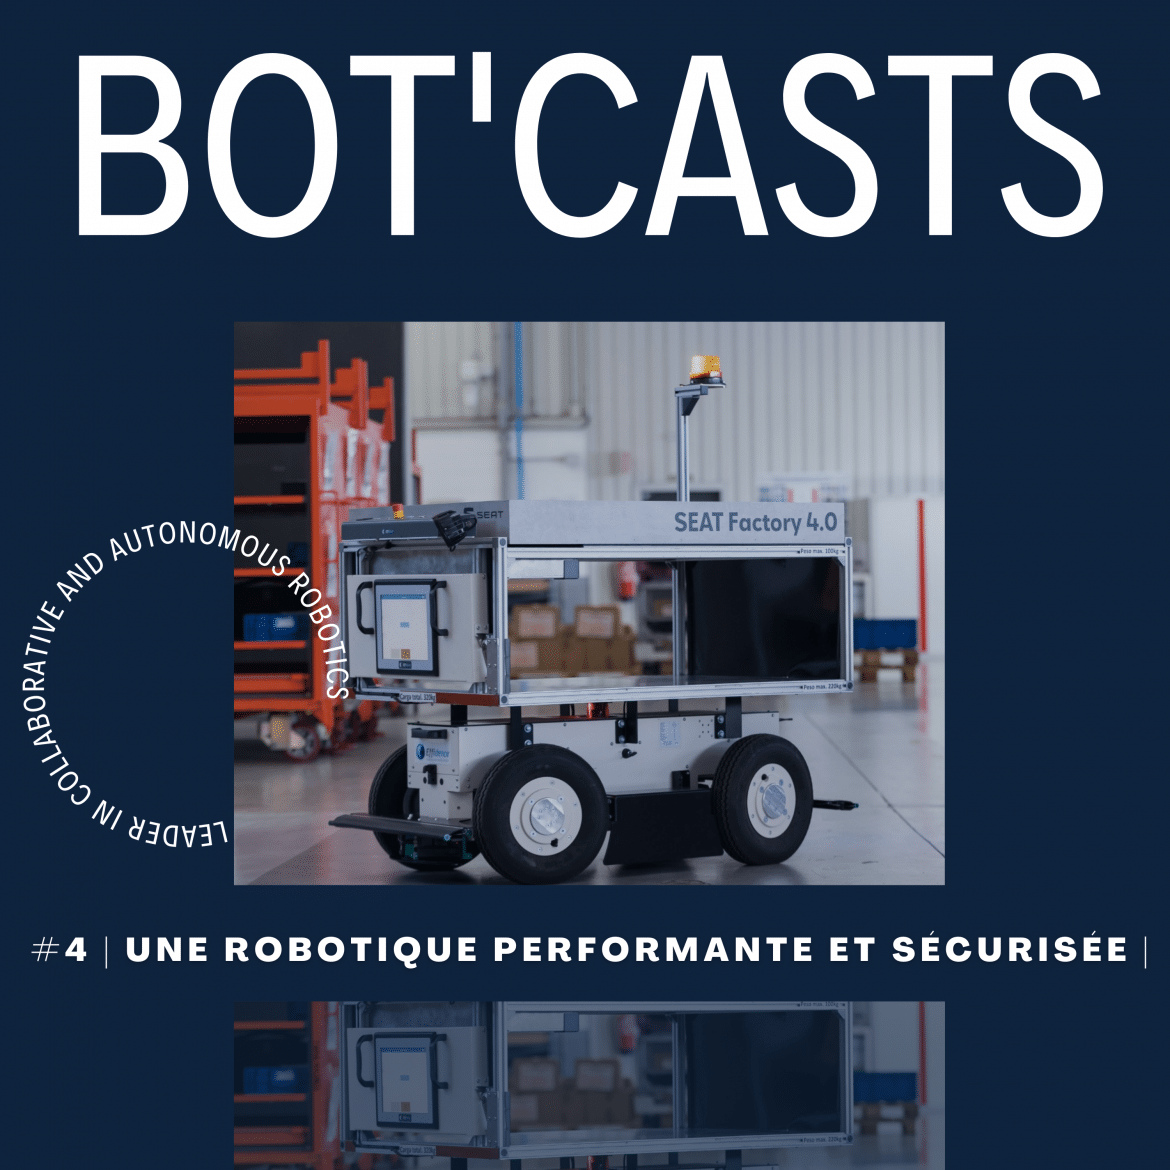 #4 - Bot-casts | Une robotique performante et sécurisée